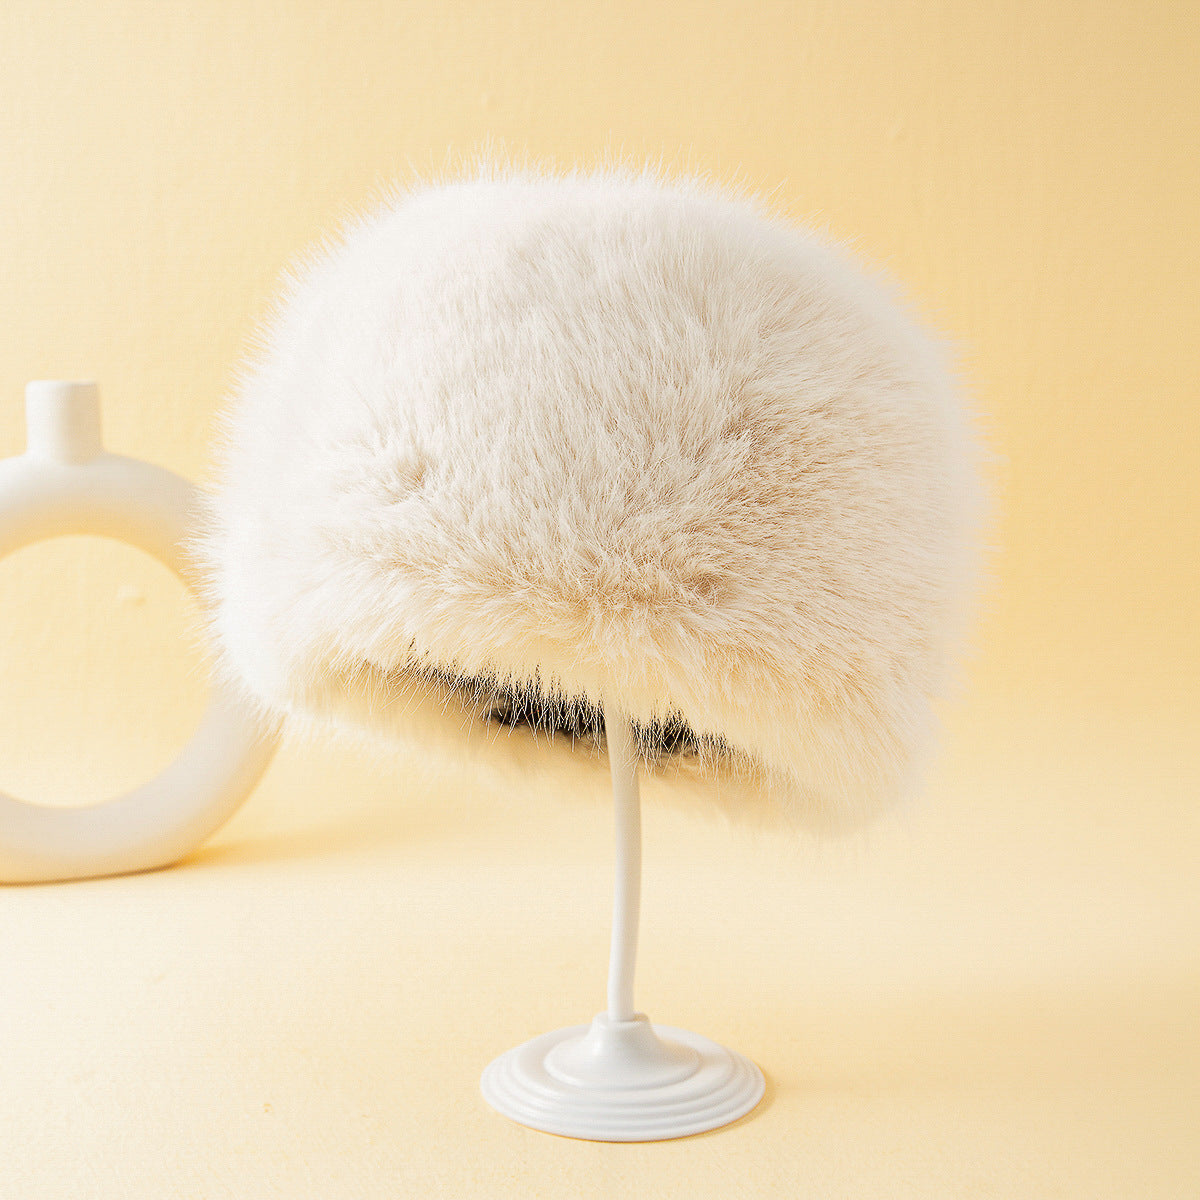 Women's Fox Fur Warm Ear Protection Bucket Hat - Carvan Mart Ltd